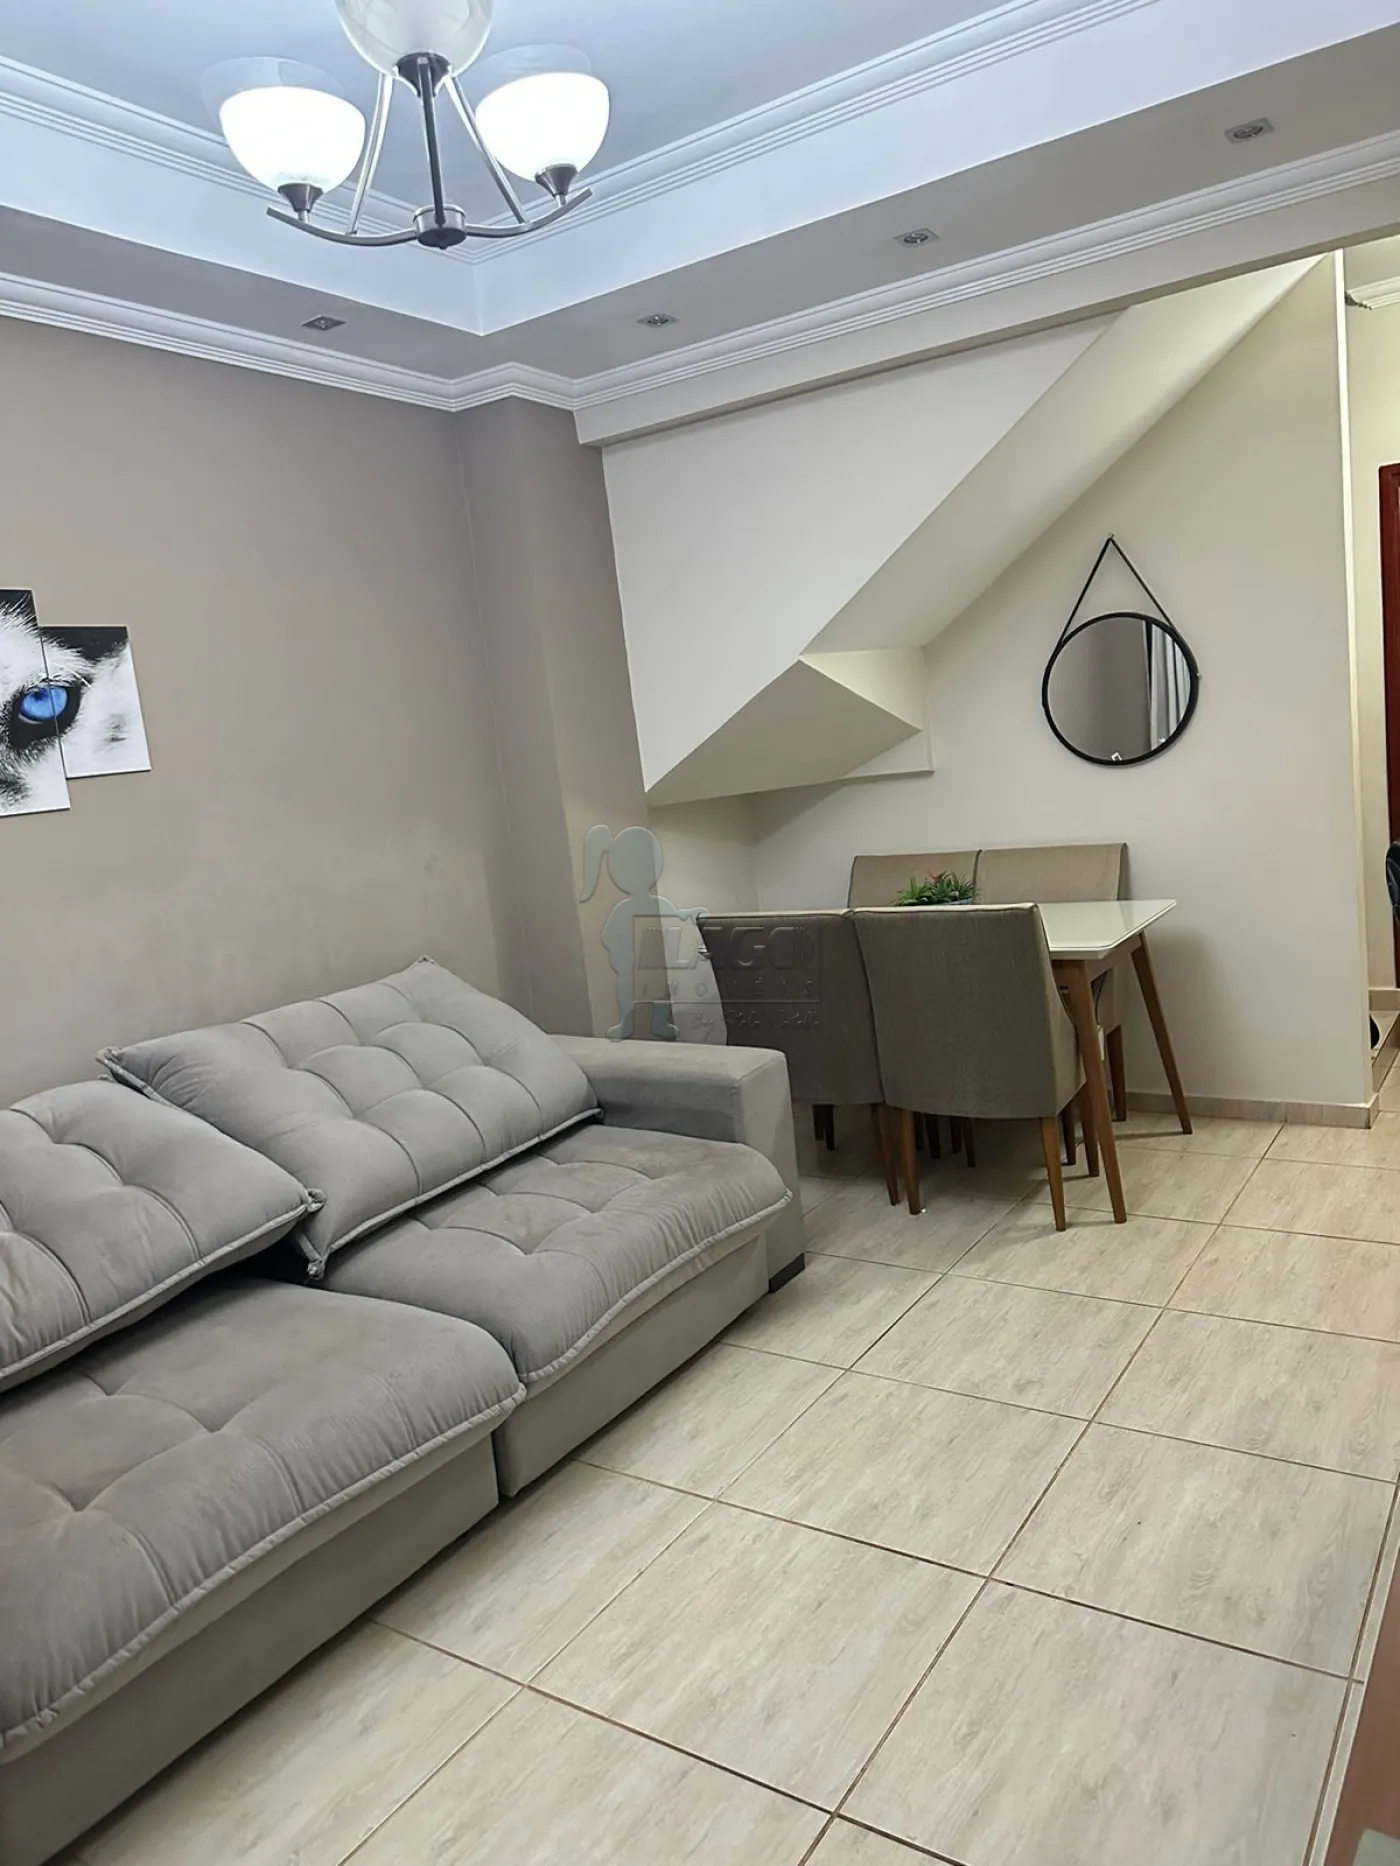 Comprar Casa condomínio / Padrão em Ribeirão Preto R$ 319.200,00 - Foto 1